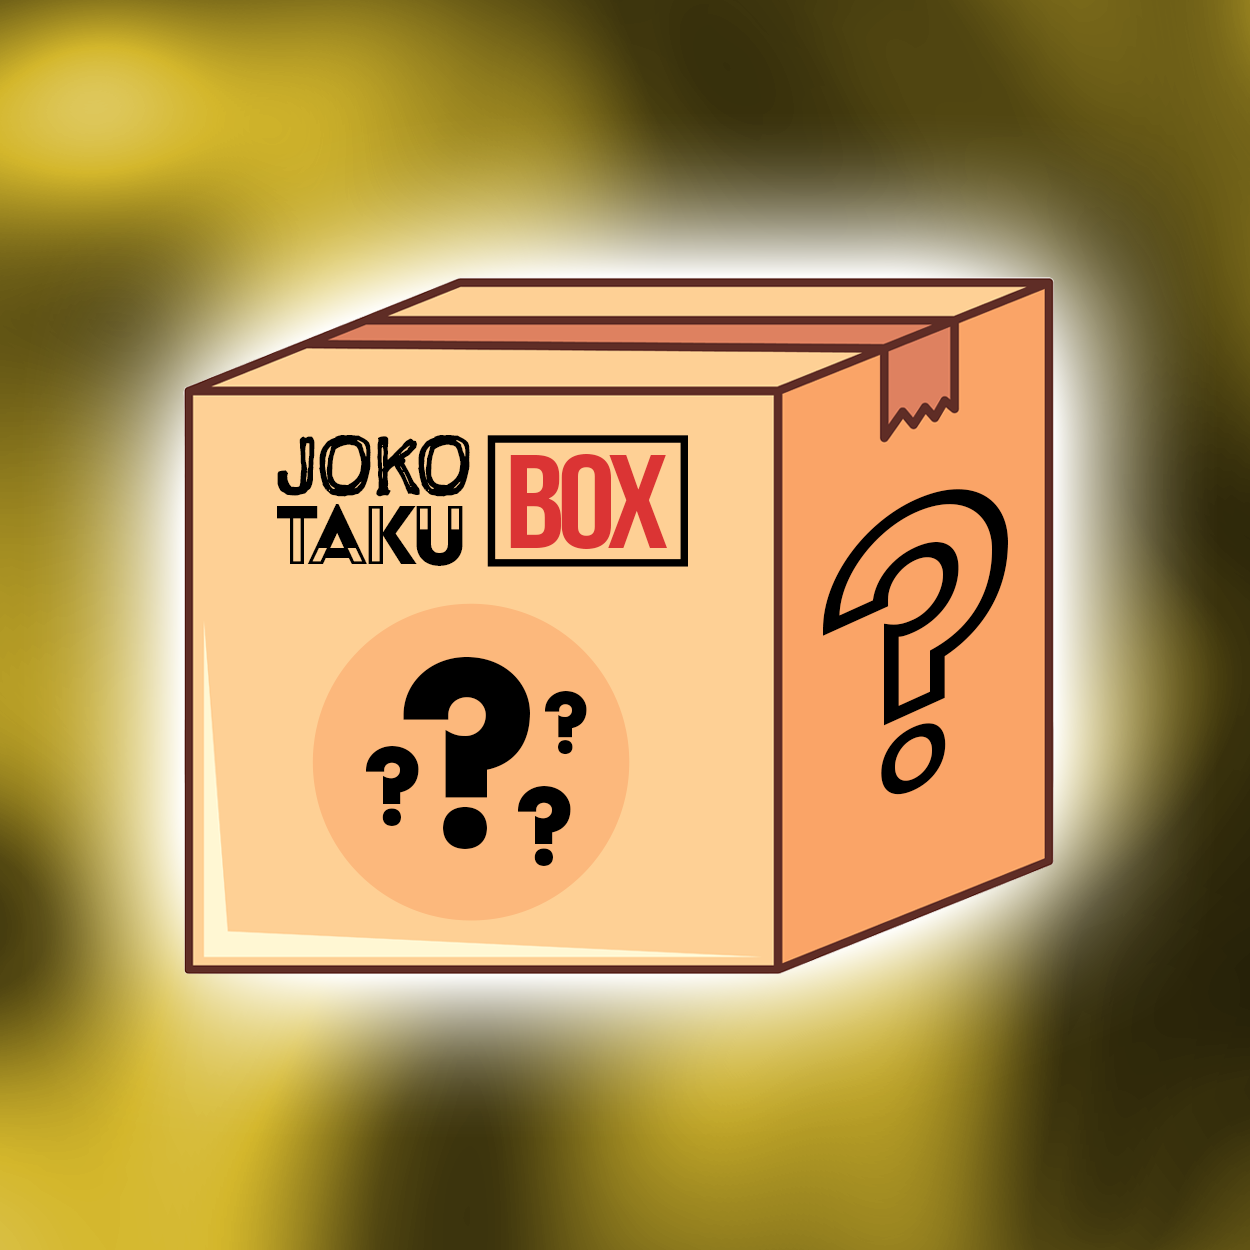 JOKOTAKU BOX MYSTÈRE